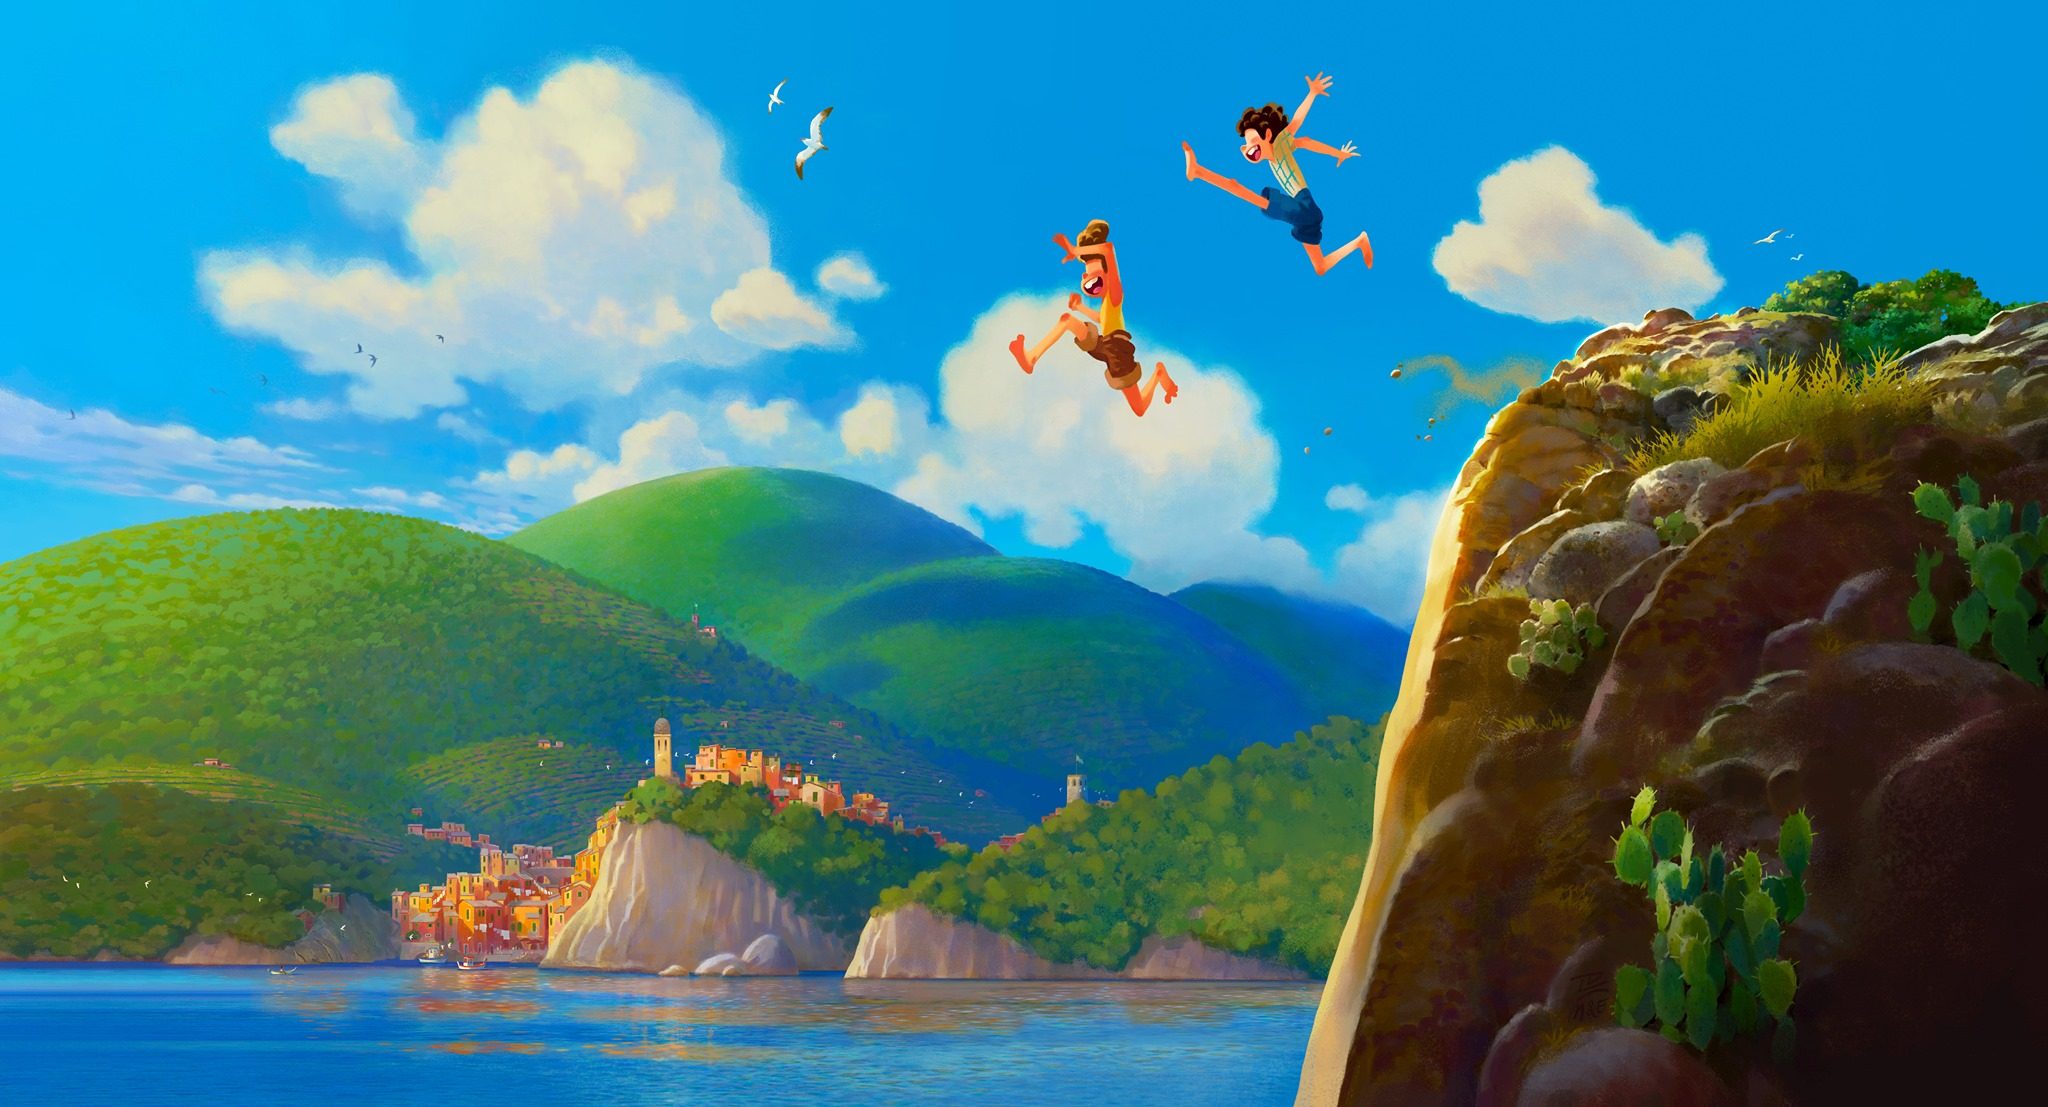 Pixar announces new original film ‘Luca’